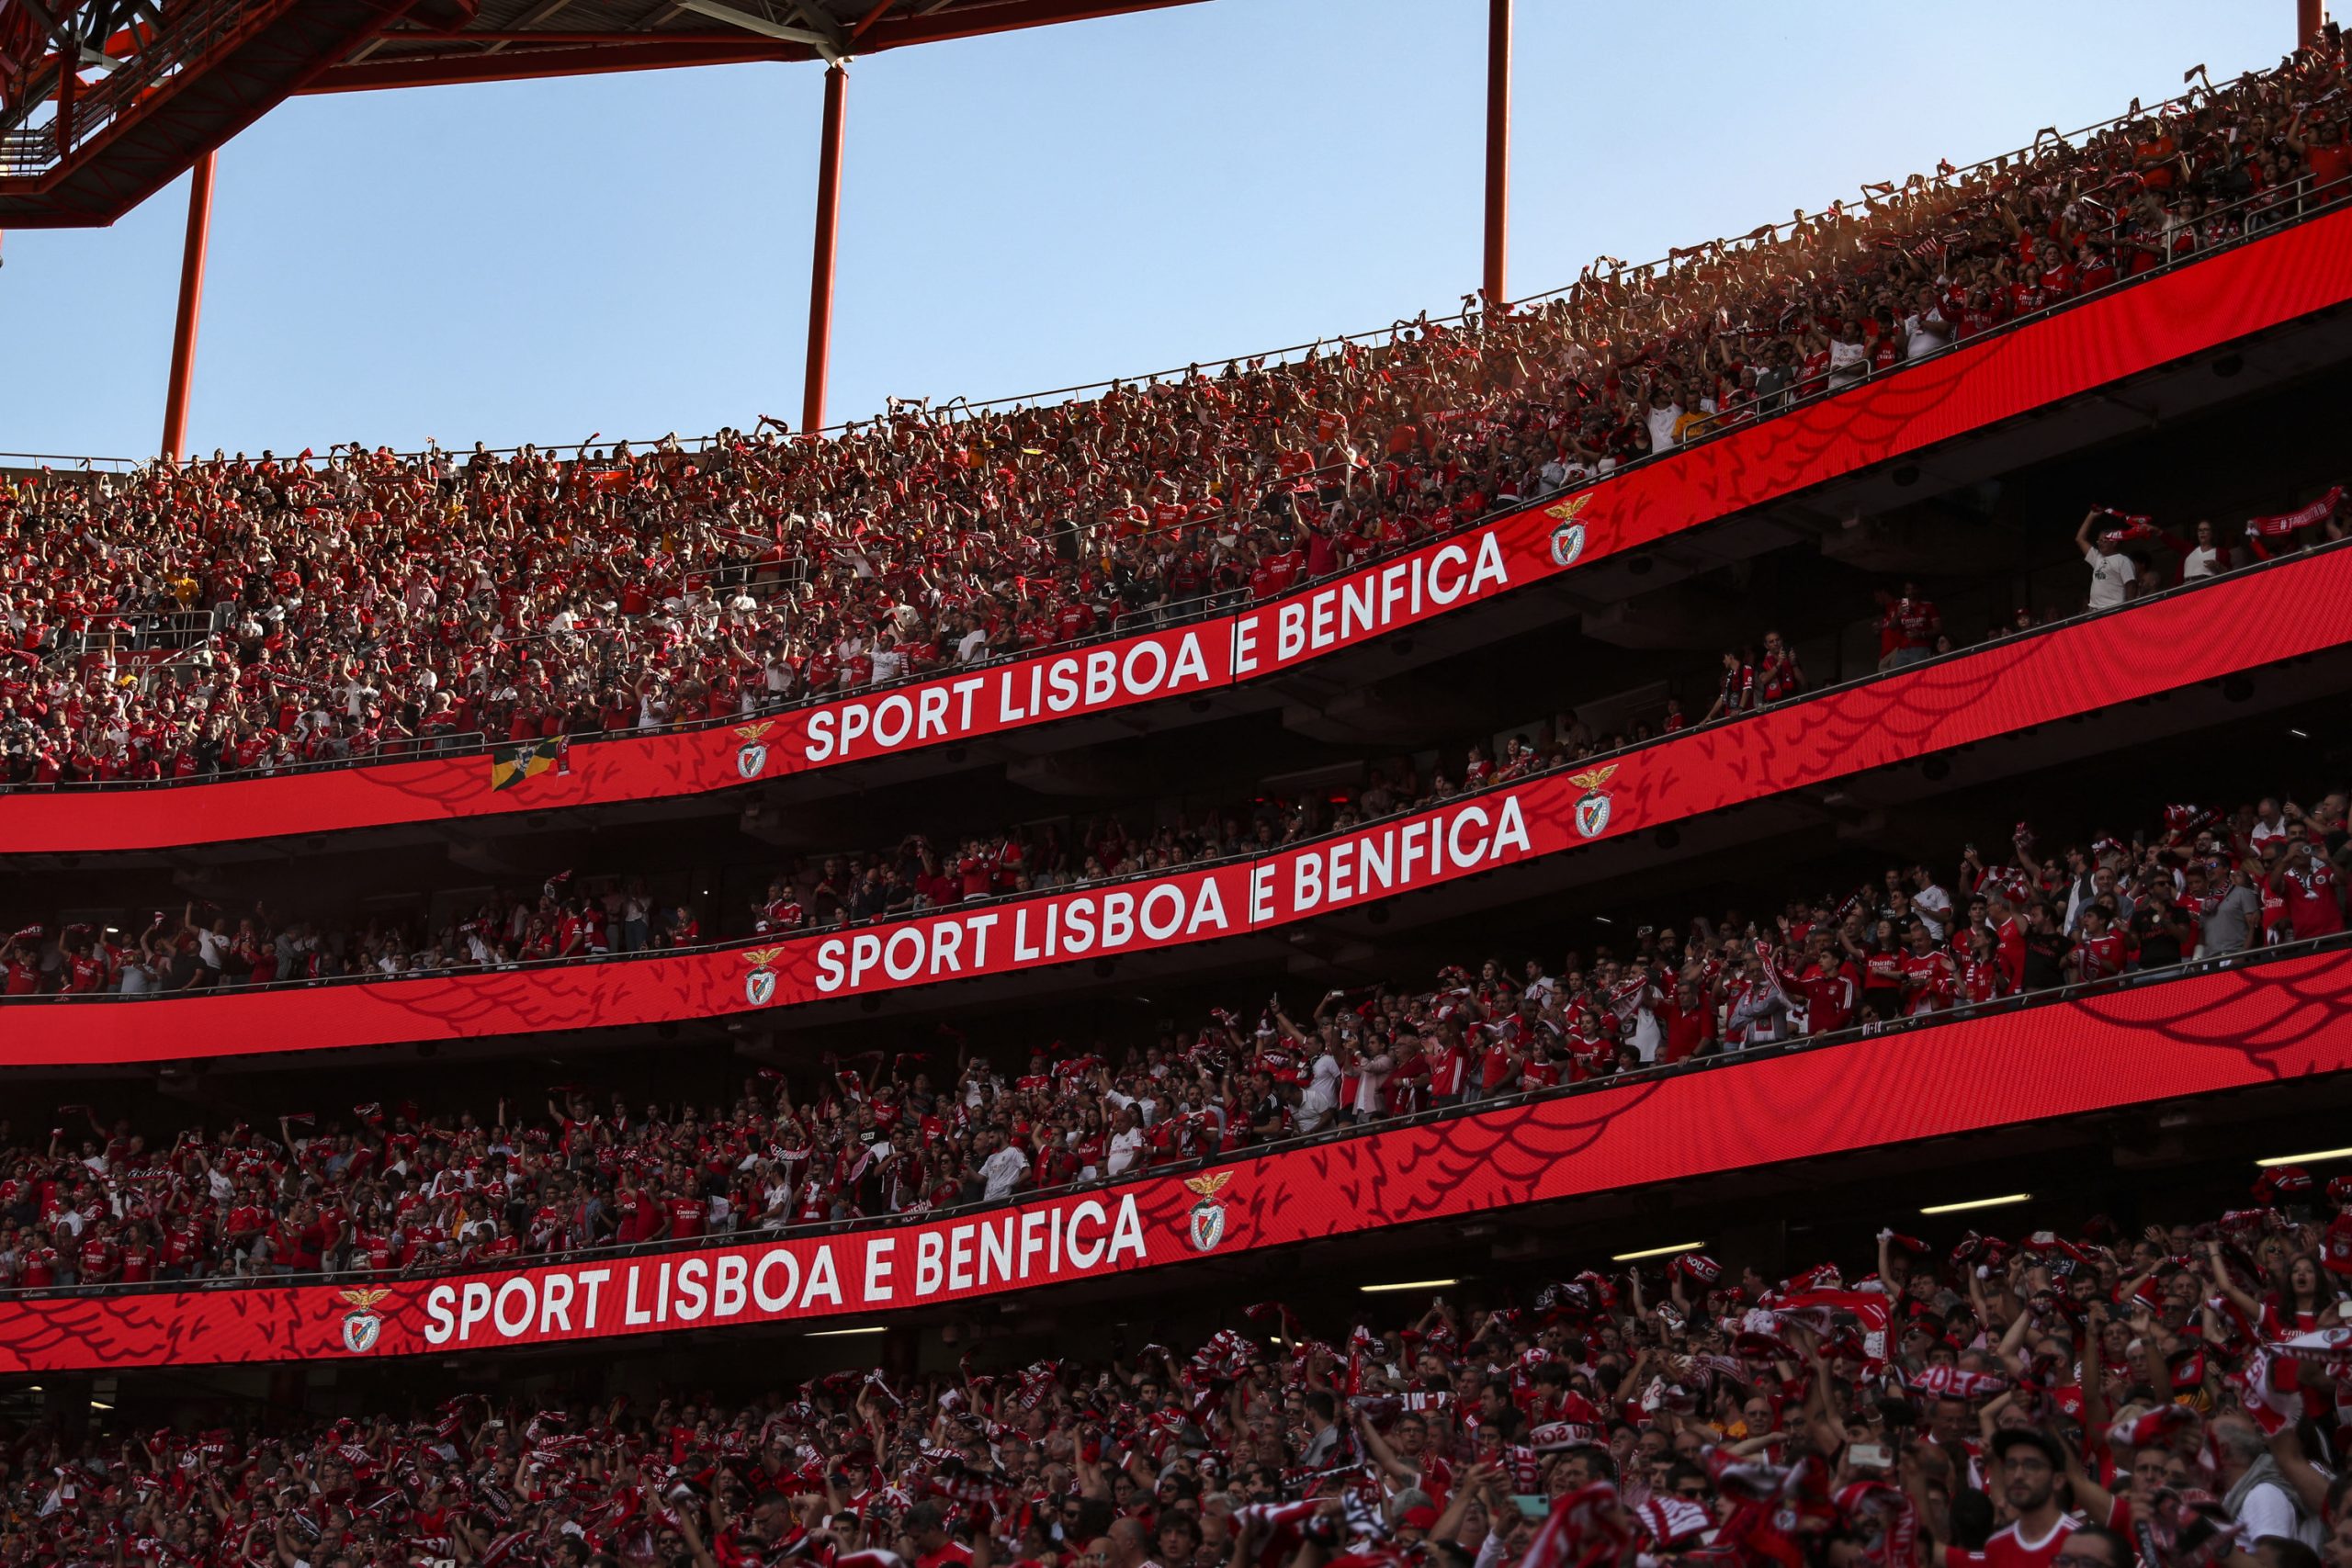 Torcedores do Benfica estão na procura por ingressos